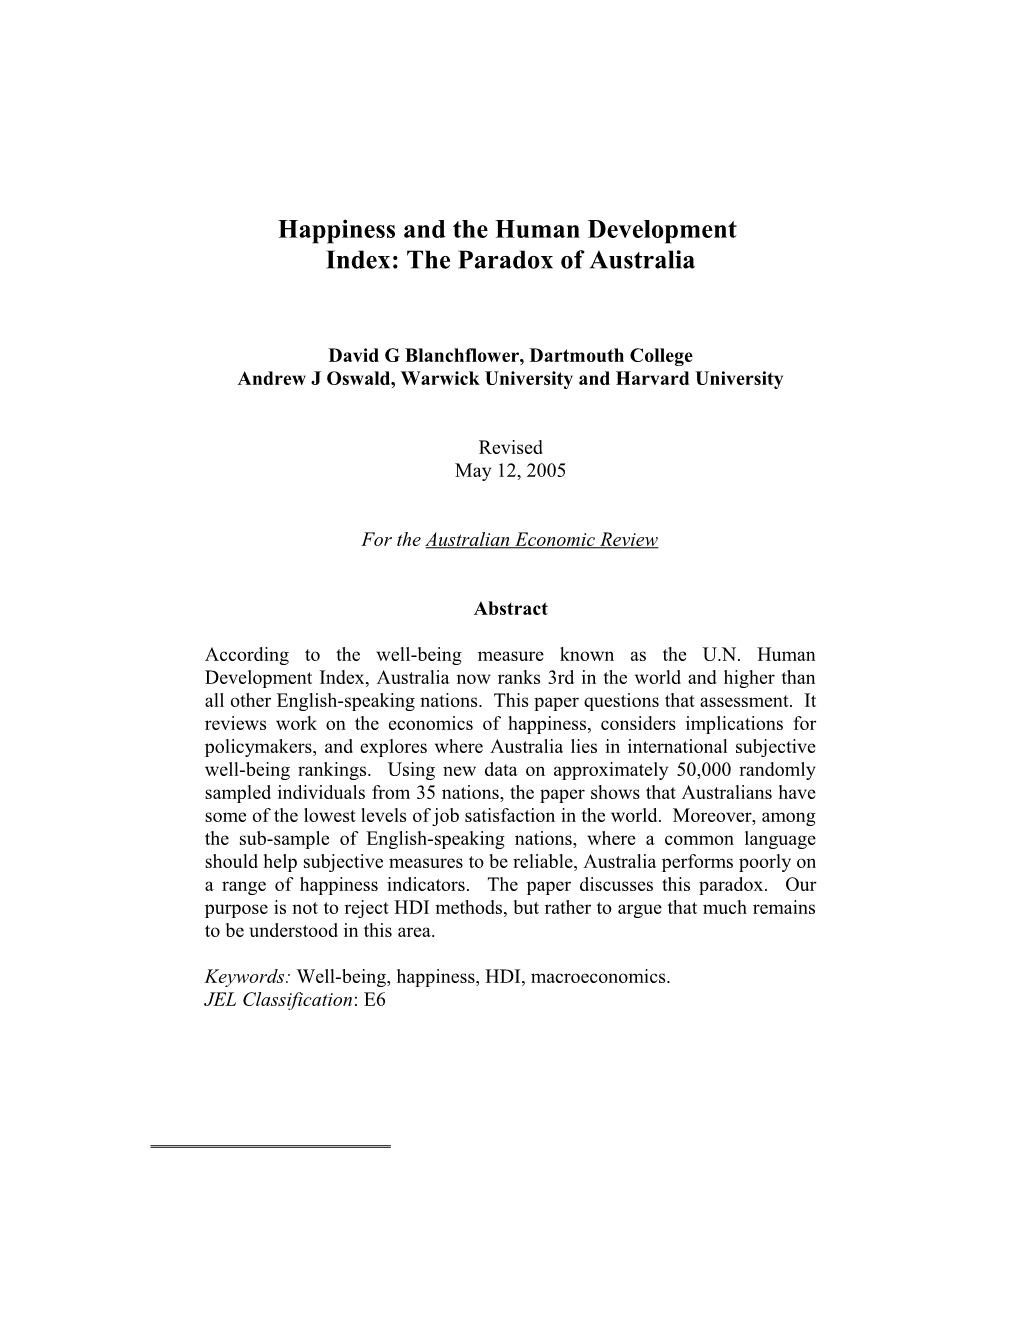 The Macroeconomics of Happiness